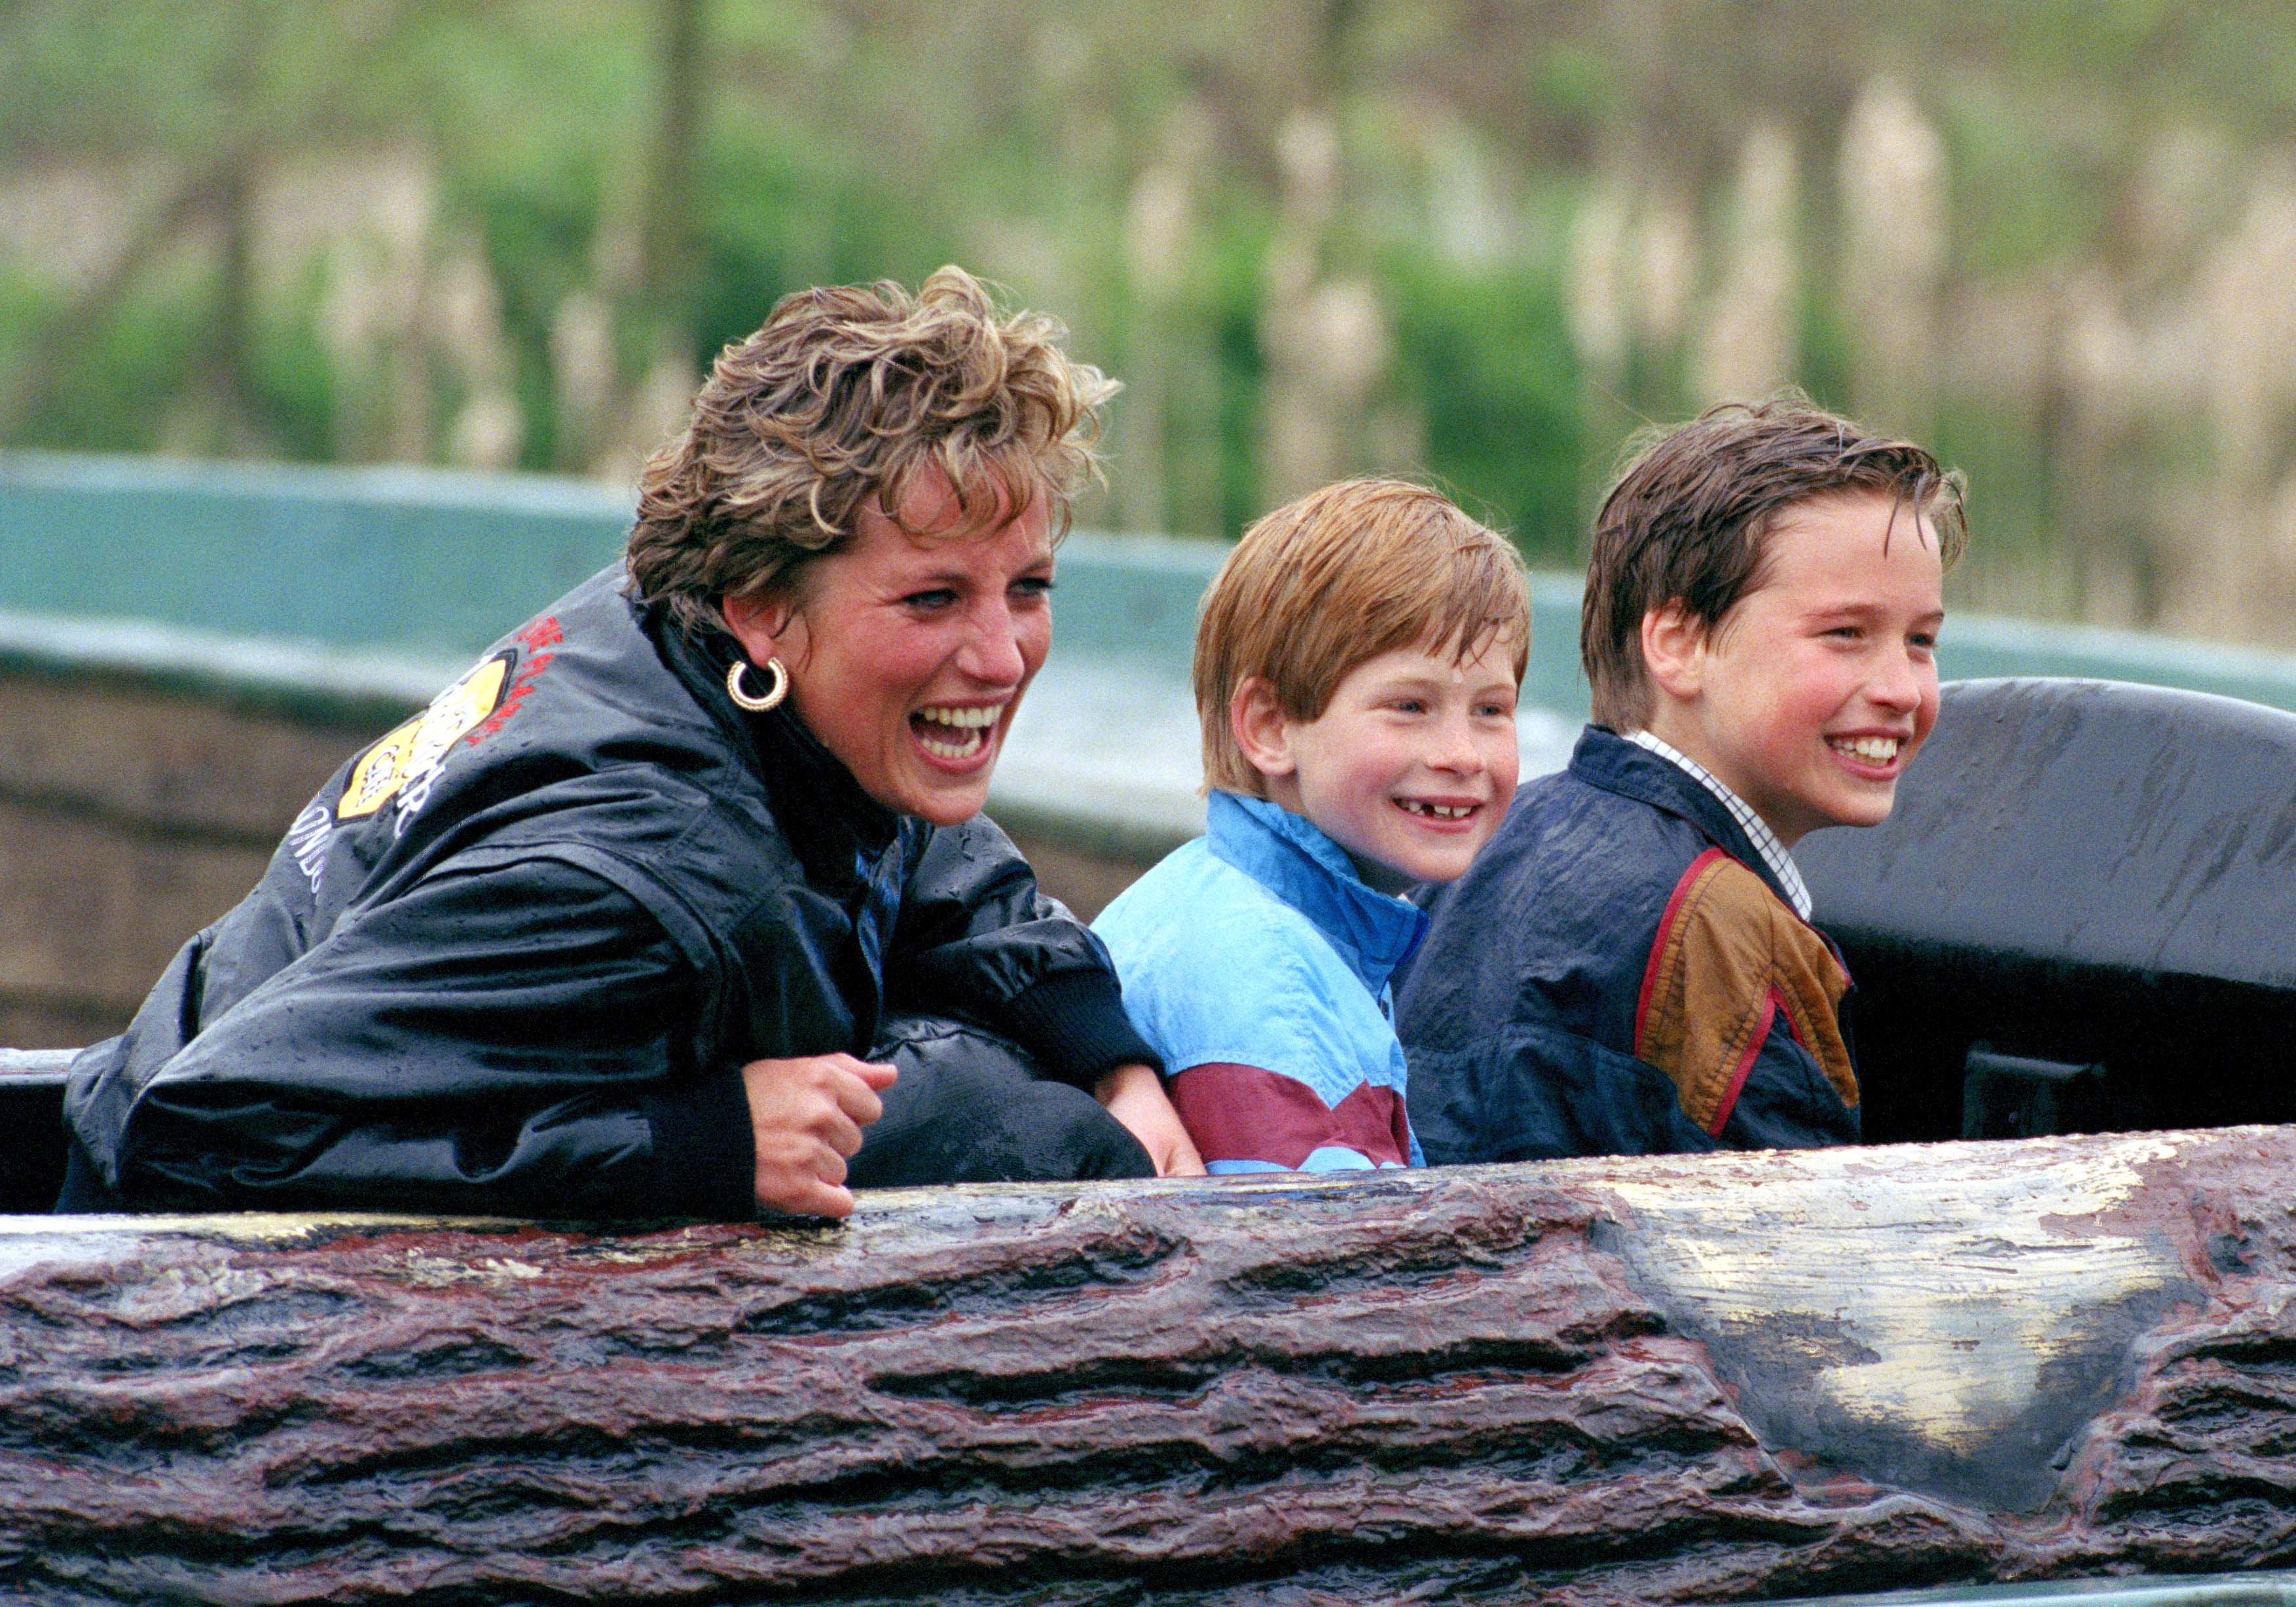 Diana Prinzessin von Wales, Prinz William und Prinz Harry besuchen den Vergnügungspark „Thorpe Park“. | Quelle: Getty Images